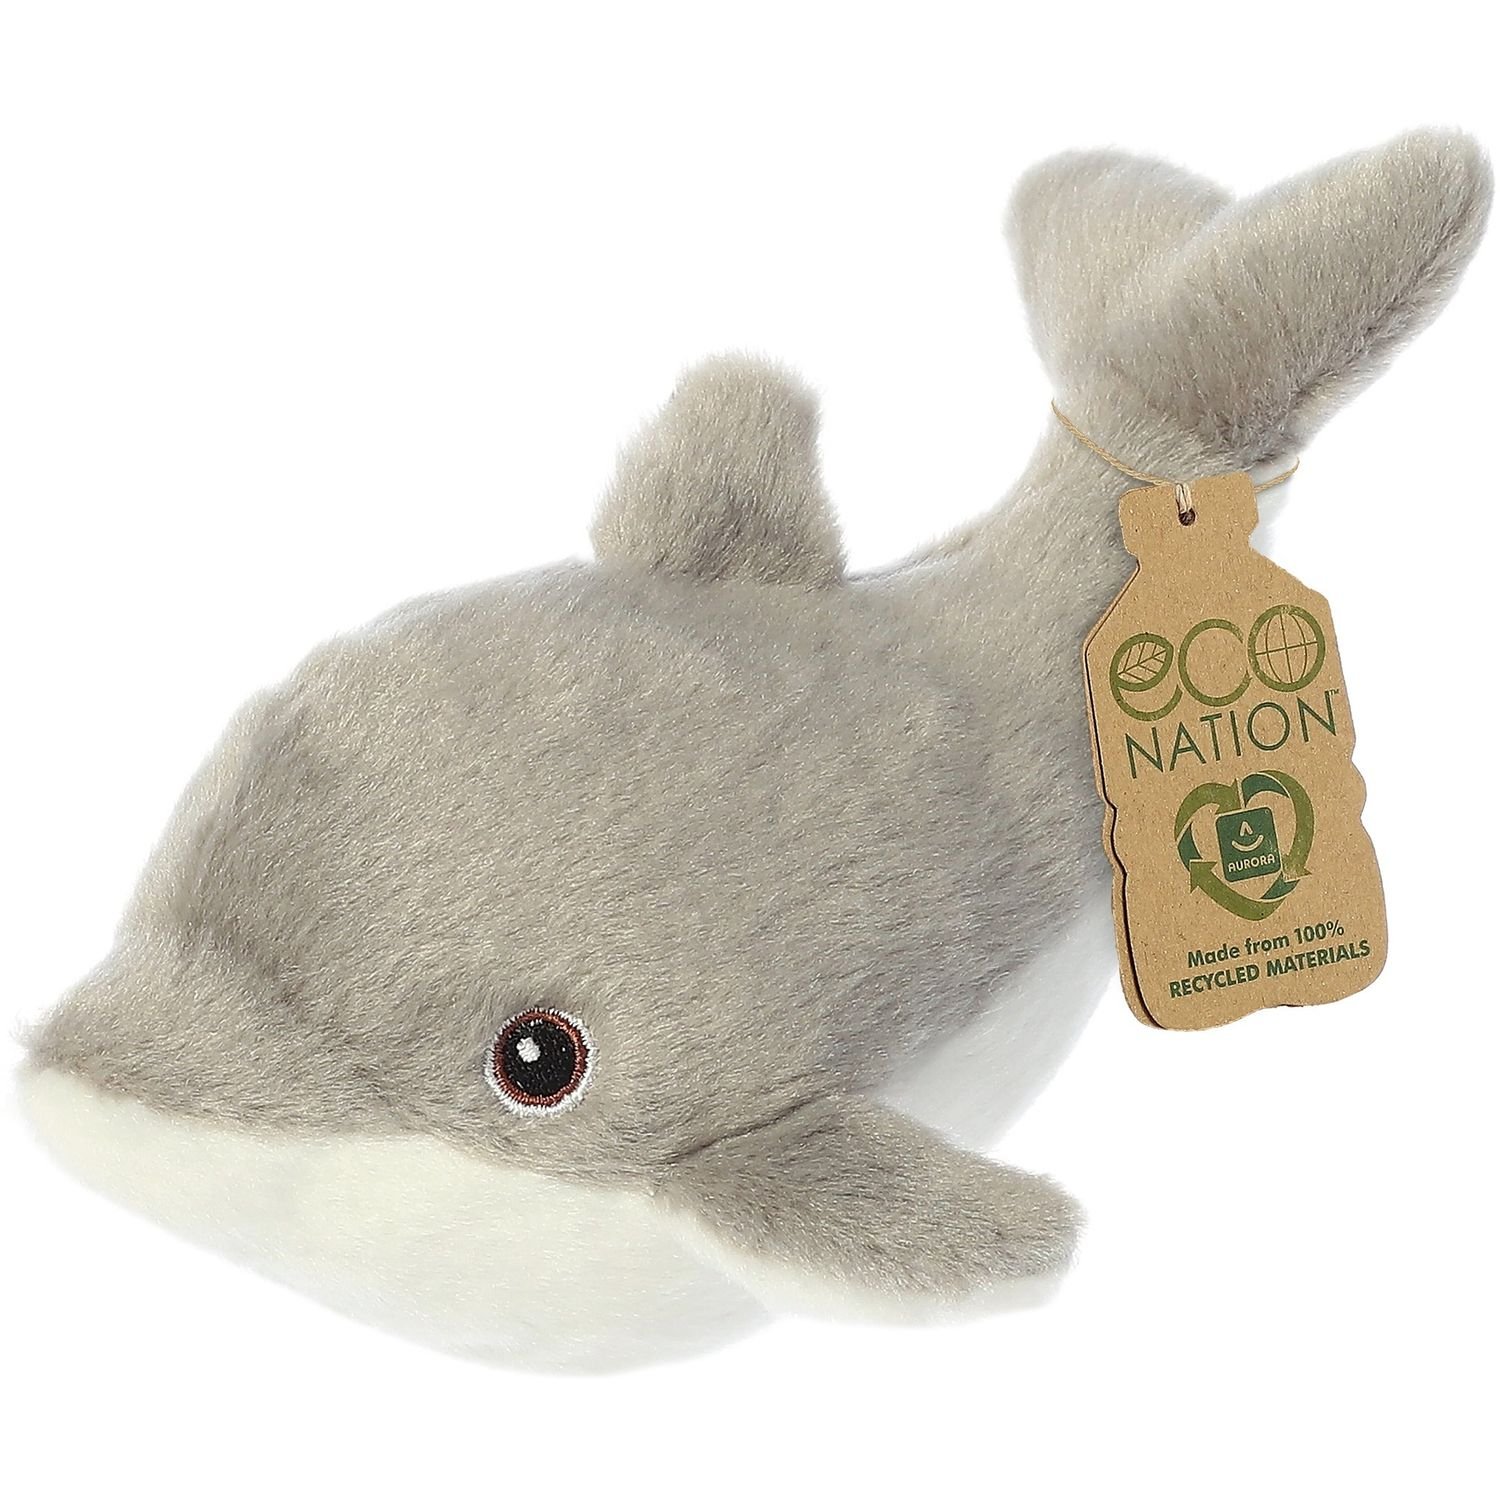 М'яка іграшка Aurora Eco Nation Дельфін, 38 см, сіра (200207F) - фото 2